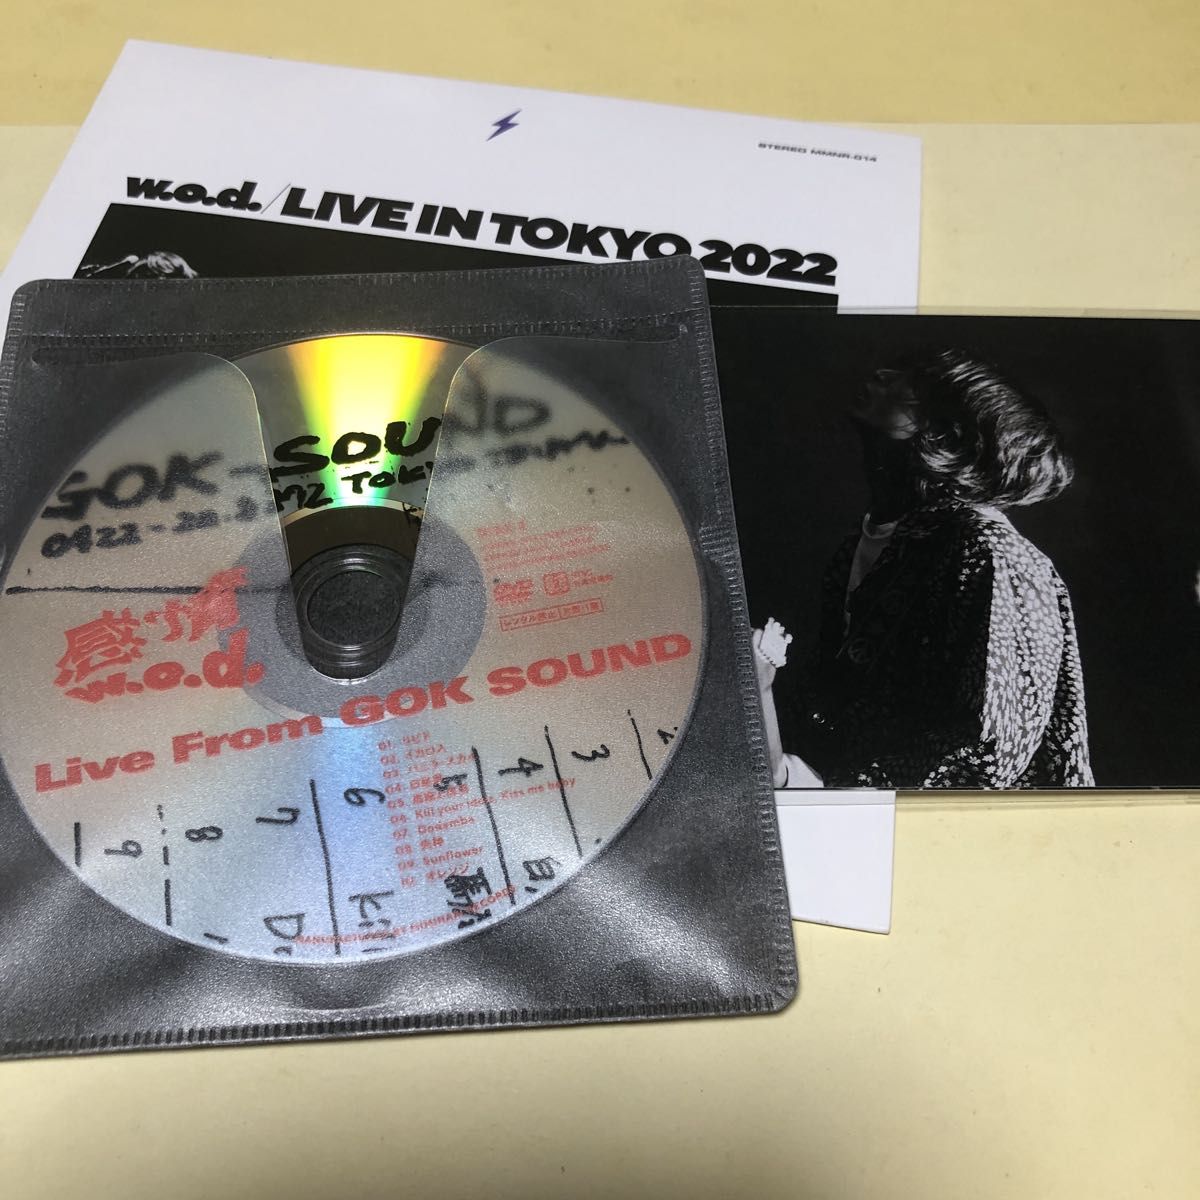 【オマケ付き】w.o.d. / Live in Tokyo 2022 CD+DVD [初回出荷限定盤 (生産限定盤)] 